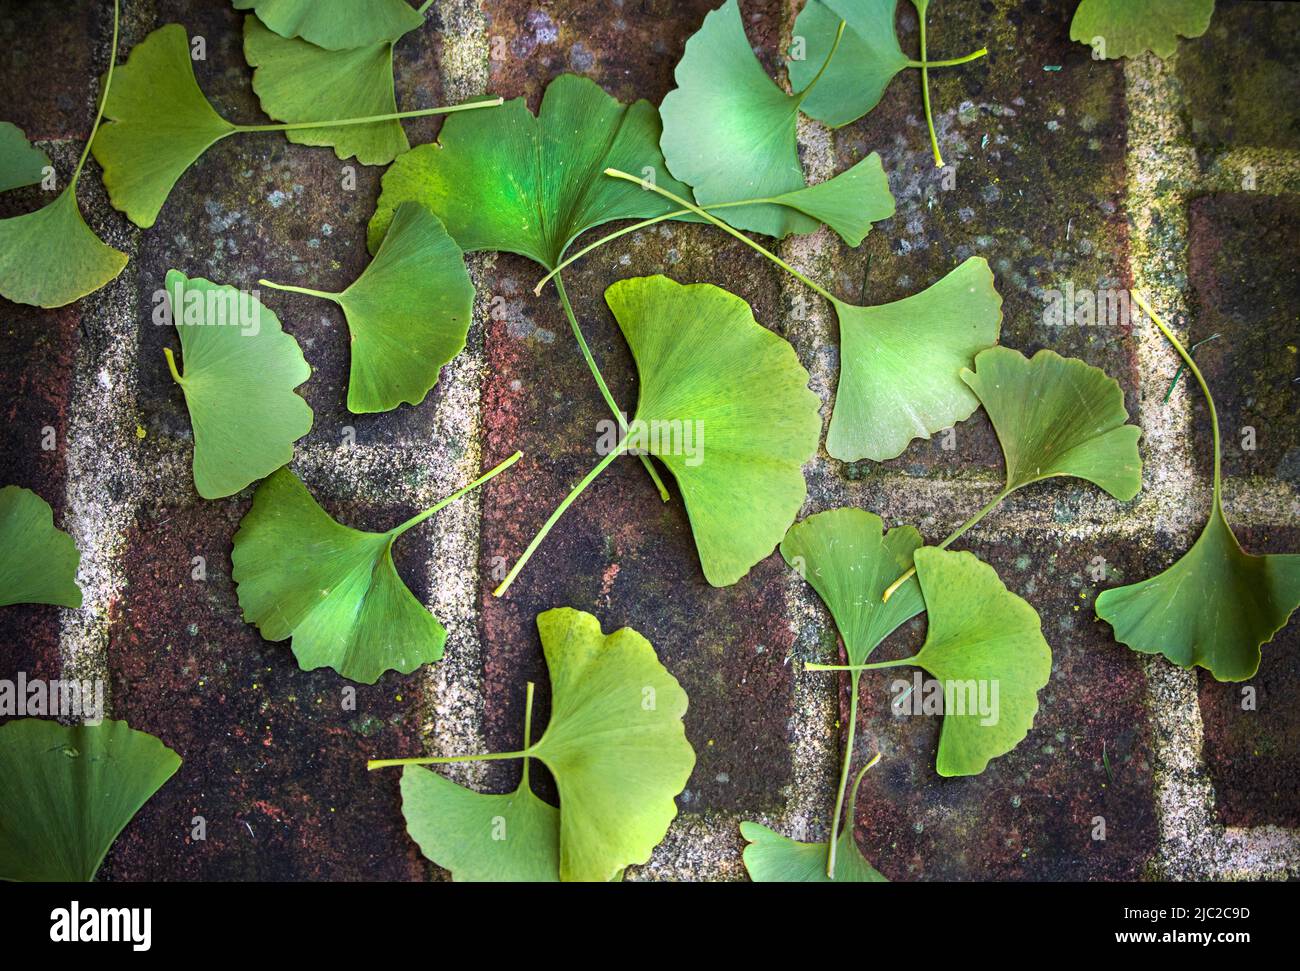 Grüne, fächerförmige Ginkgo biloba, Maidenhair, Blätter, die im Sommer oder Herbst auf einem roten Ziegelsteinsteig verstreut liegen, Lancaster County, Pennsylvania Stockfoto